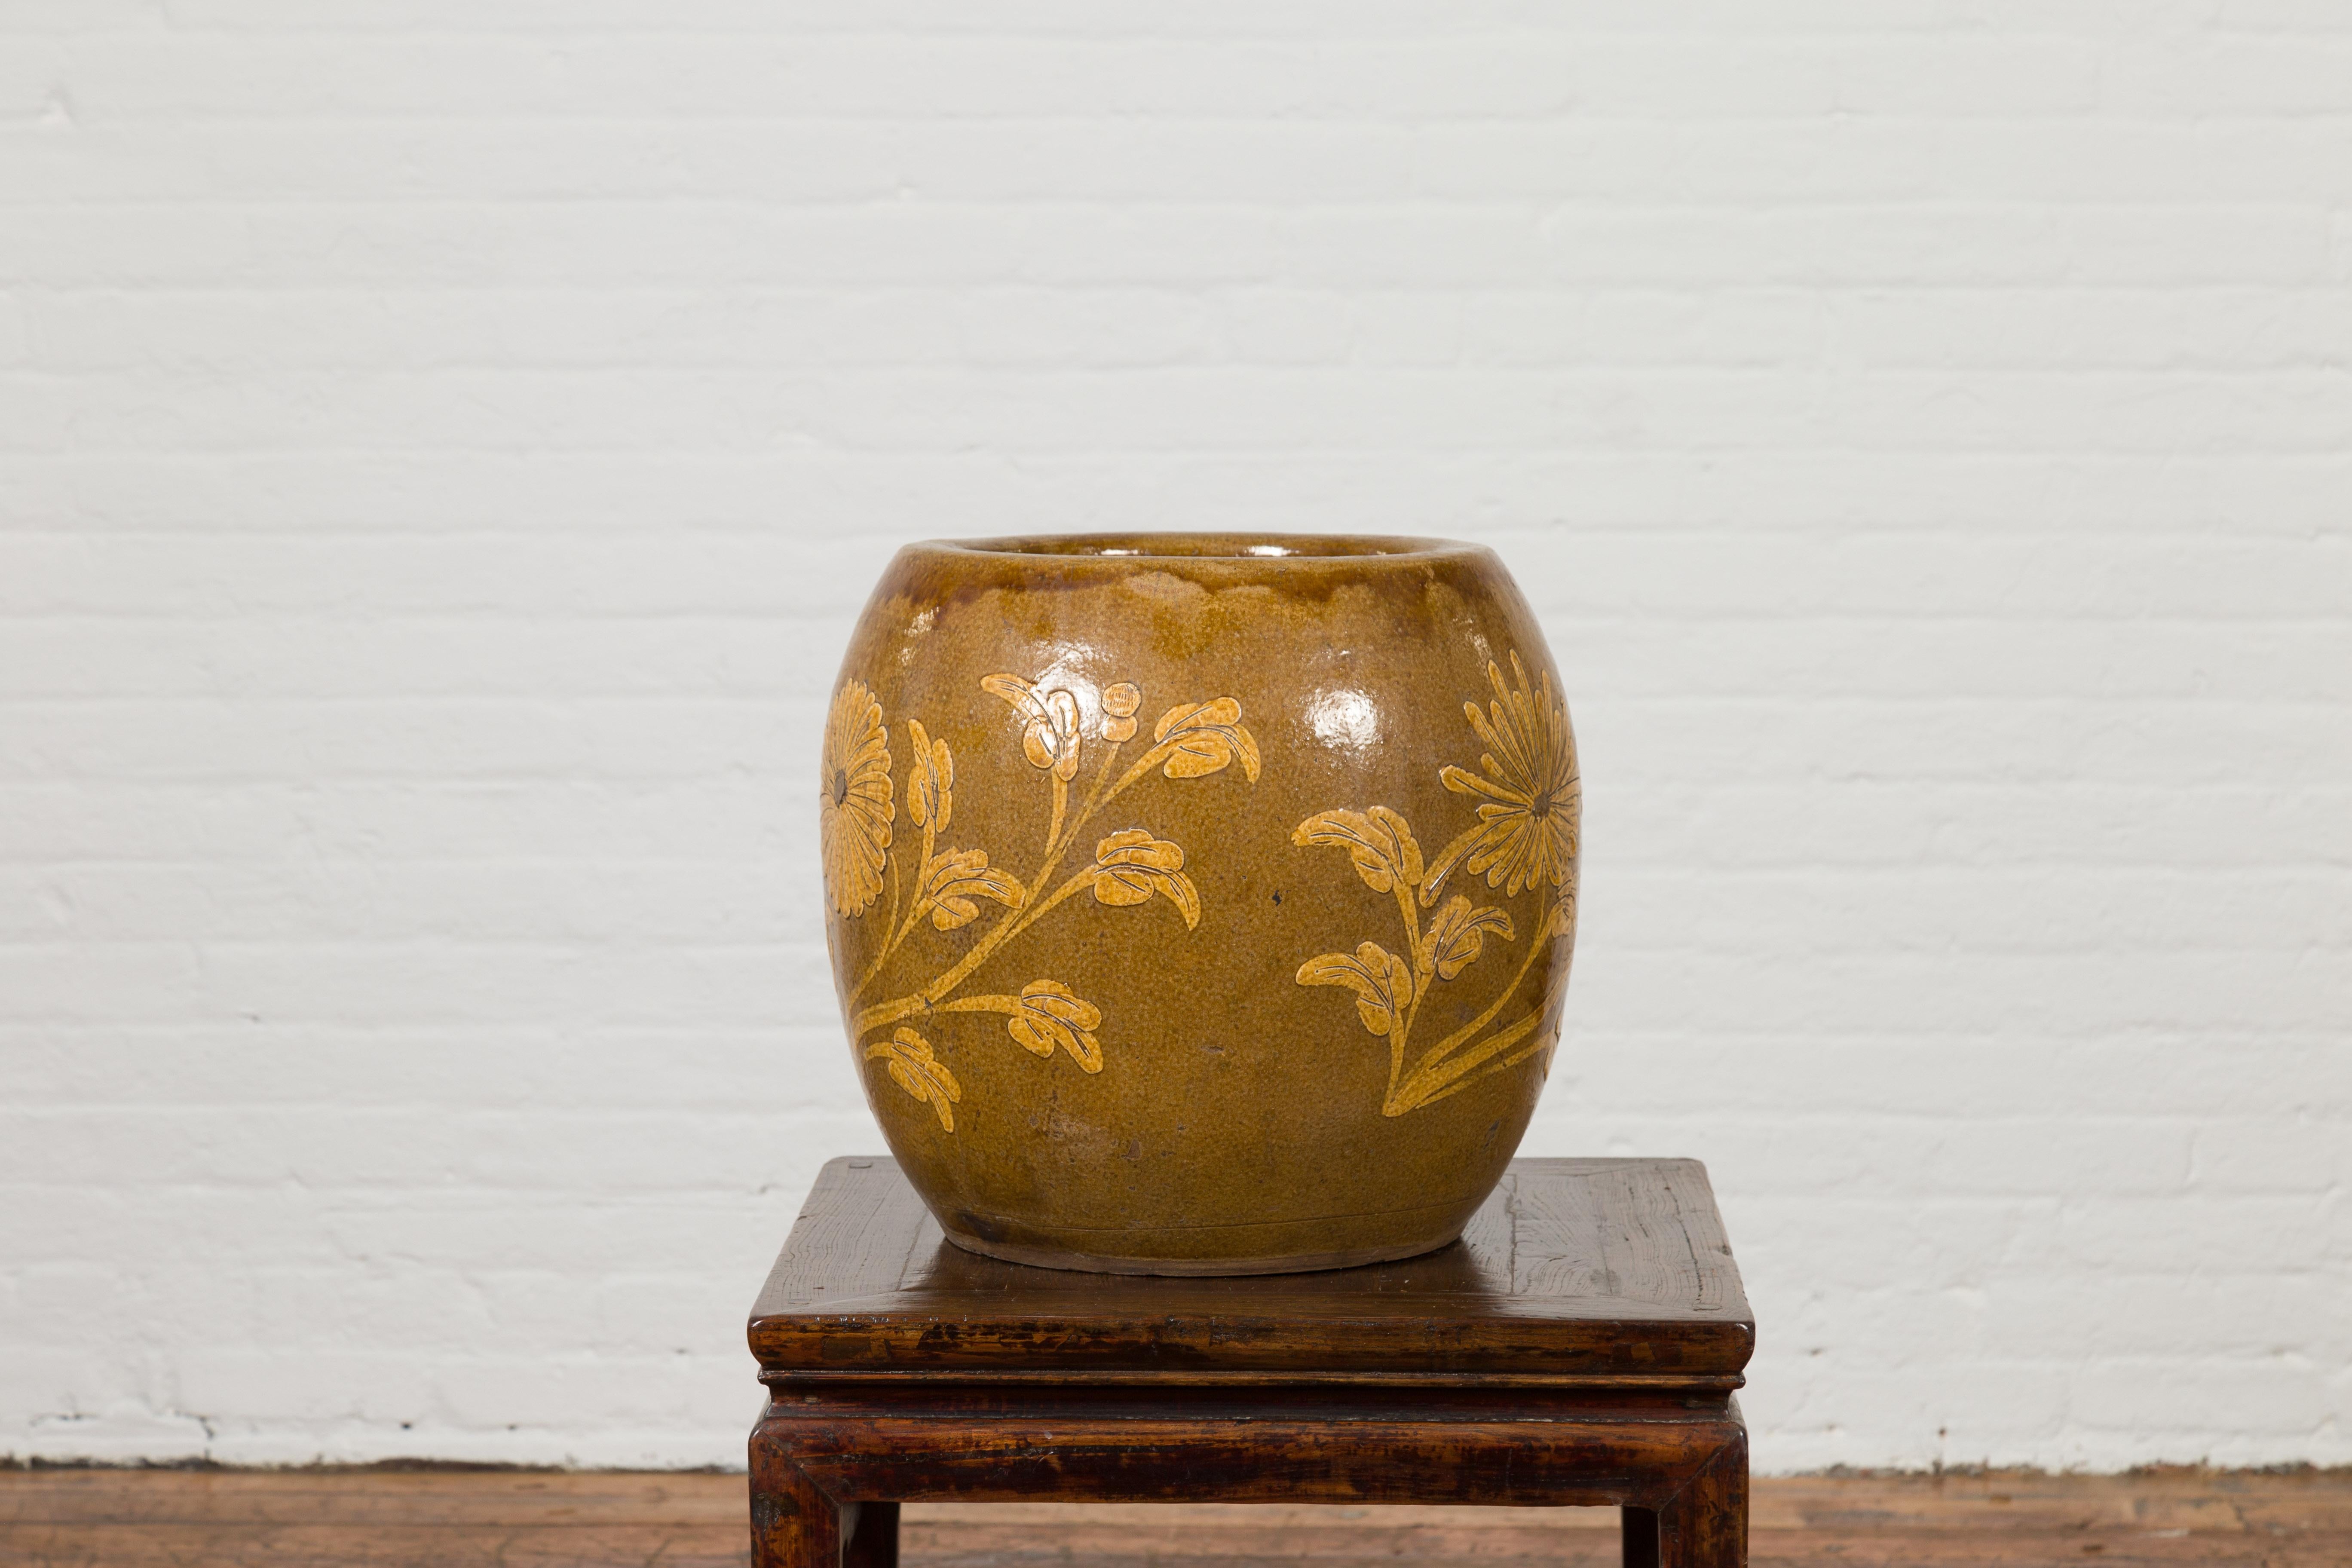 19th Century Antique Thai Glazed Ceramic Brown Round Planter with Golden Floral Motifs